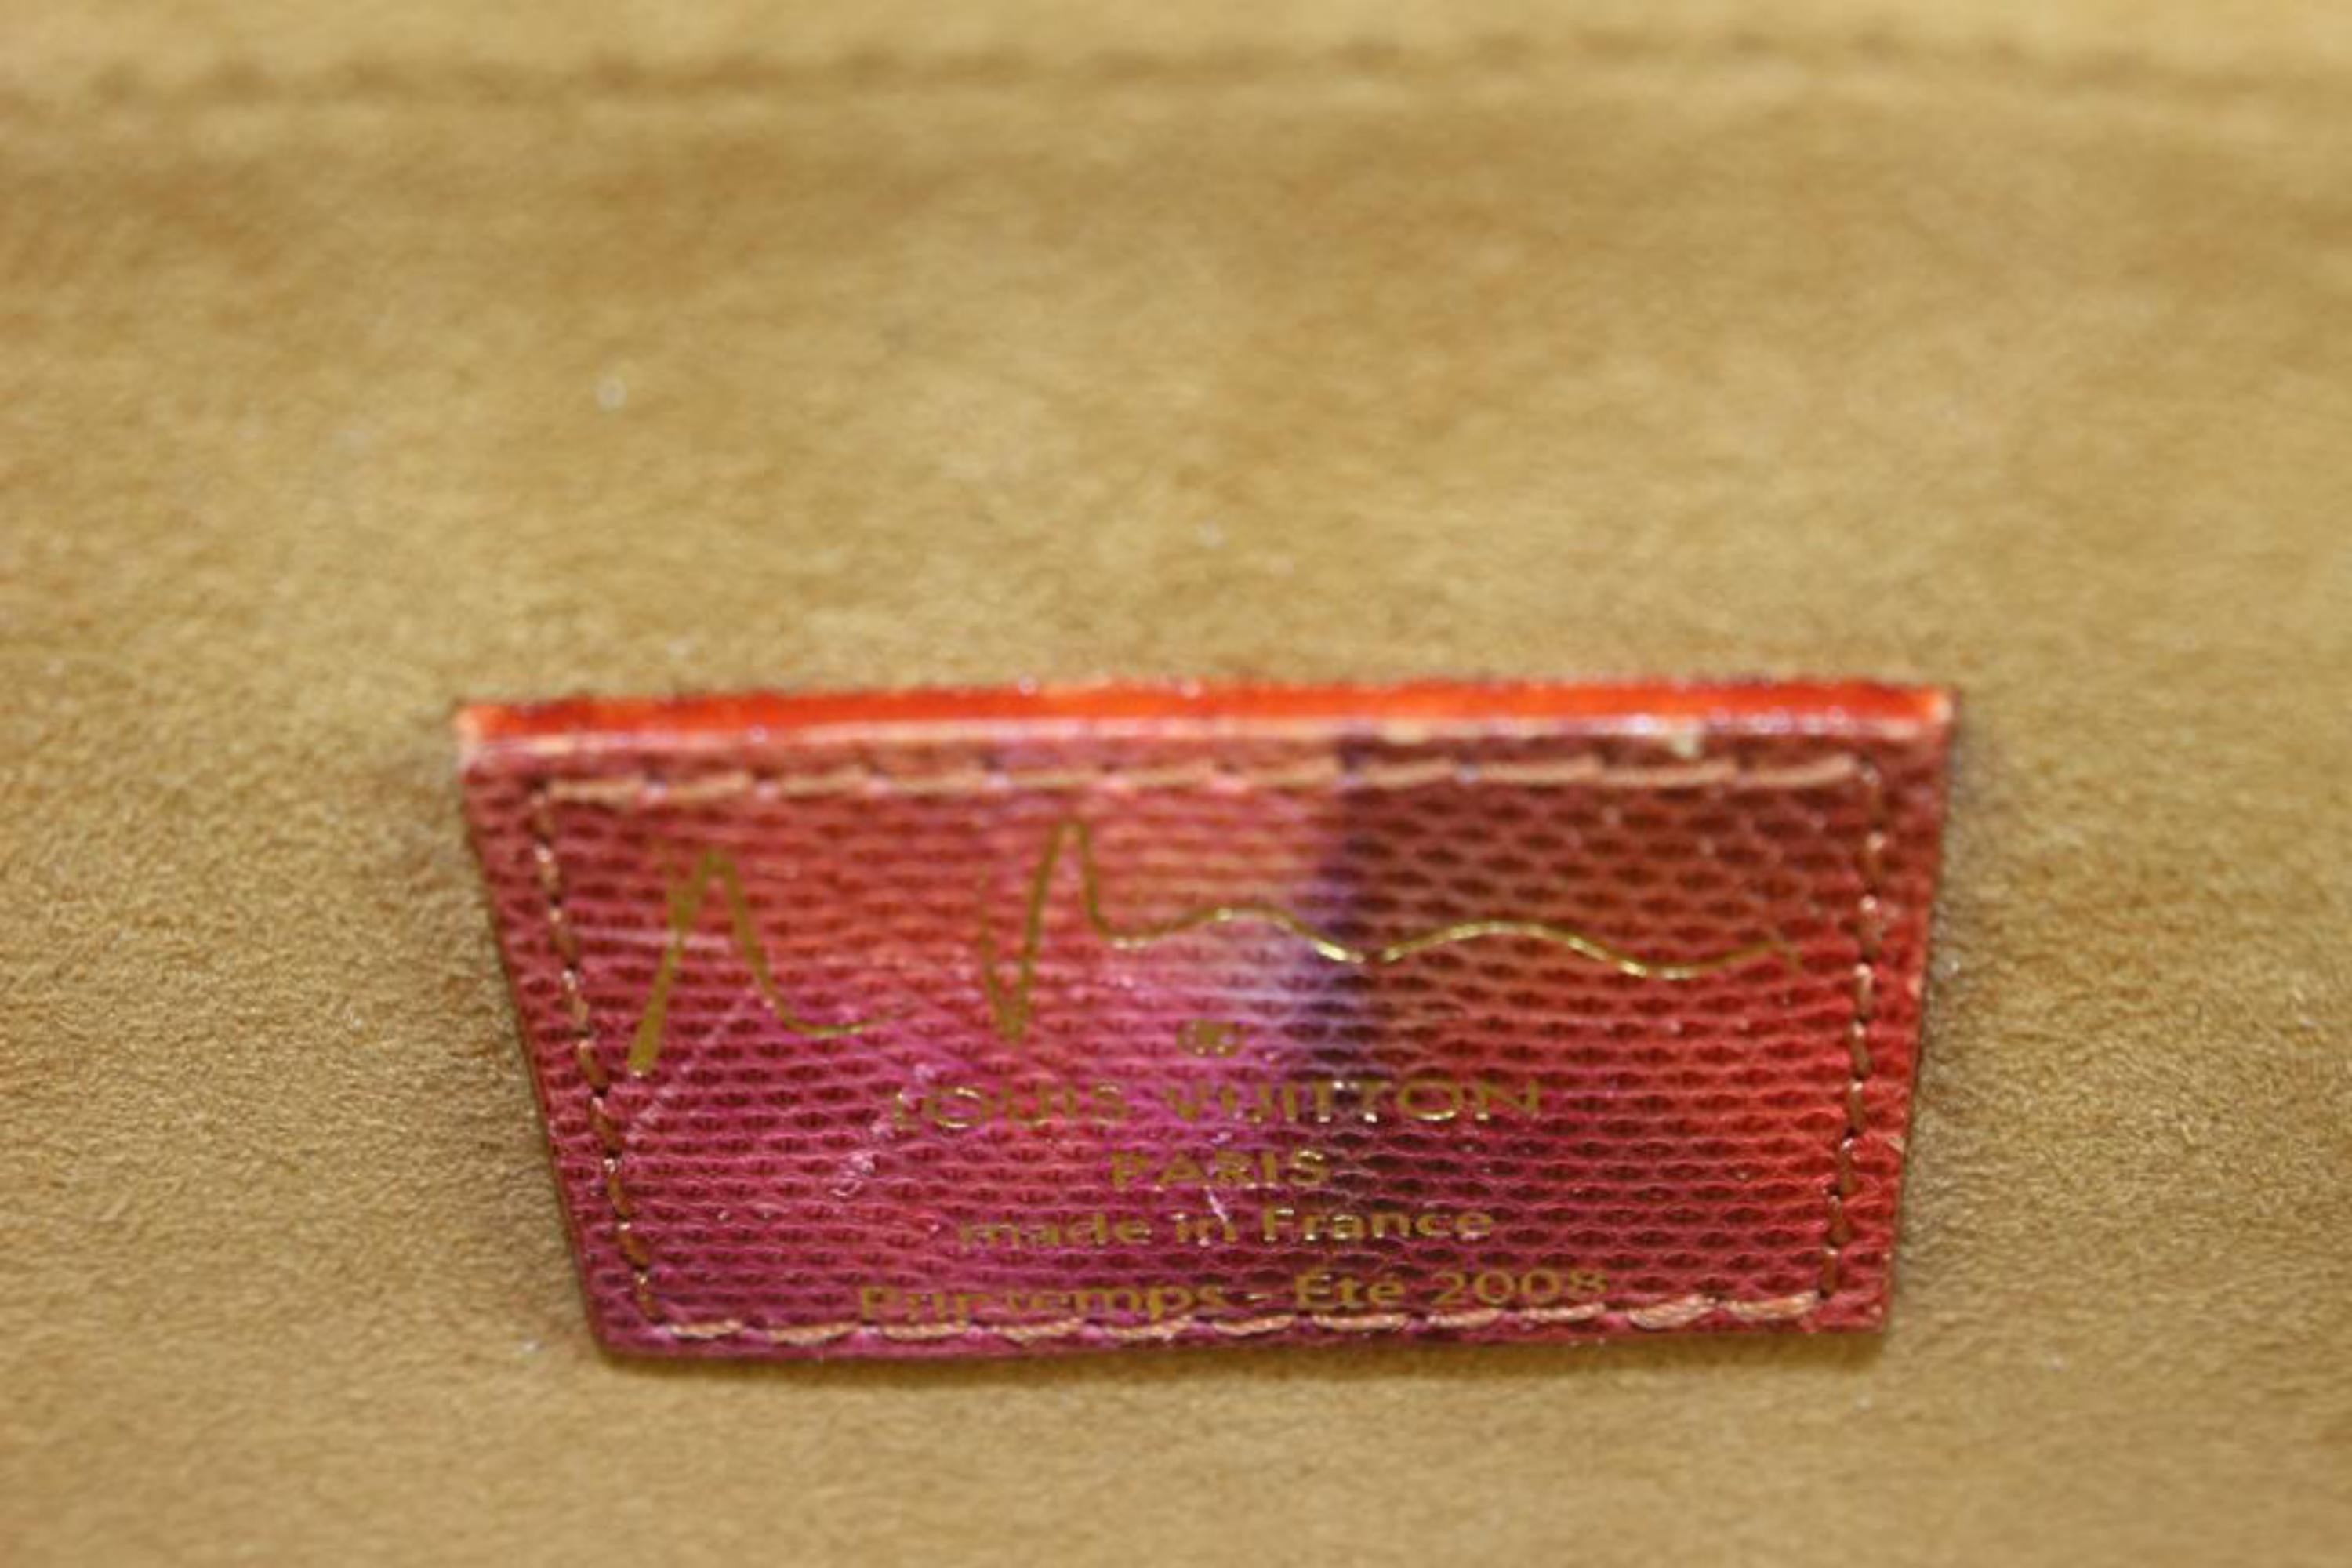 Louis Vuitton Papillon Frame Bag